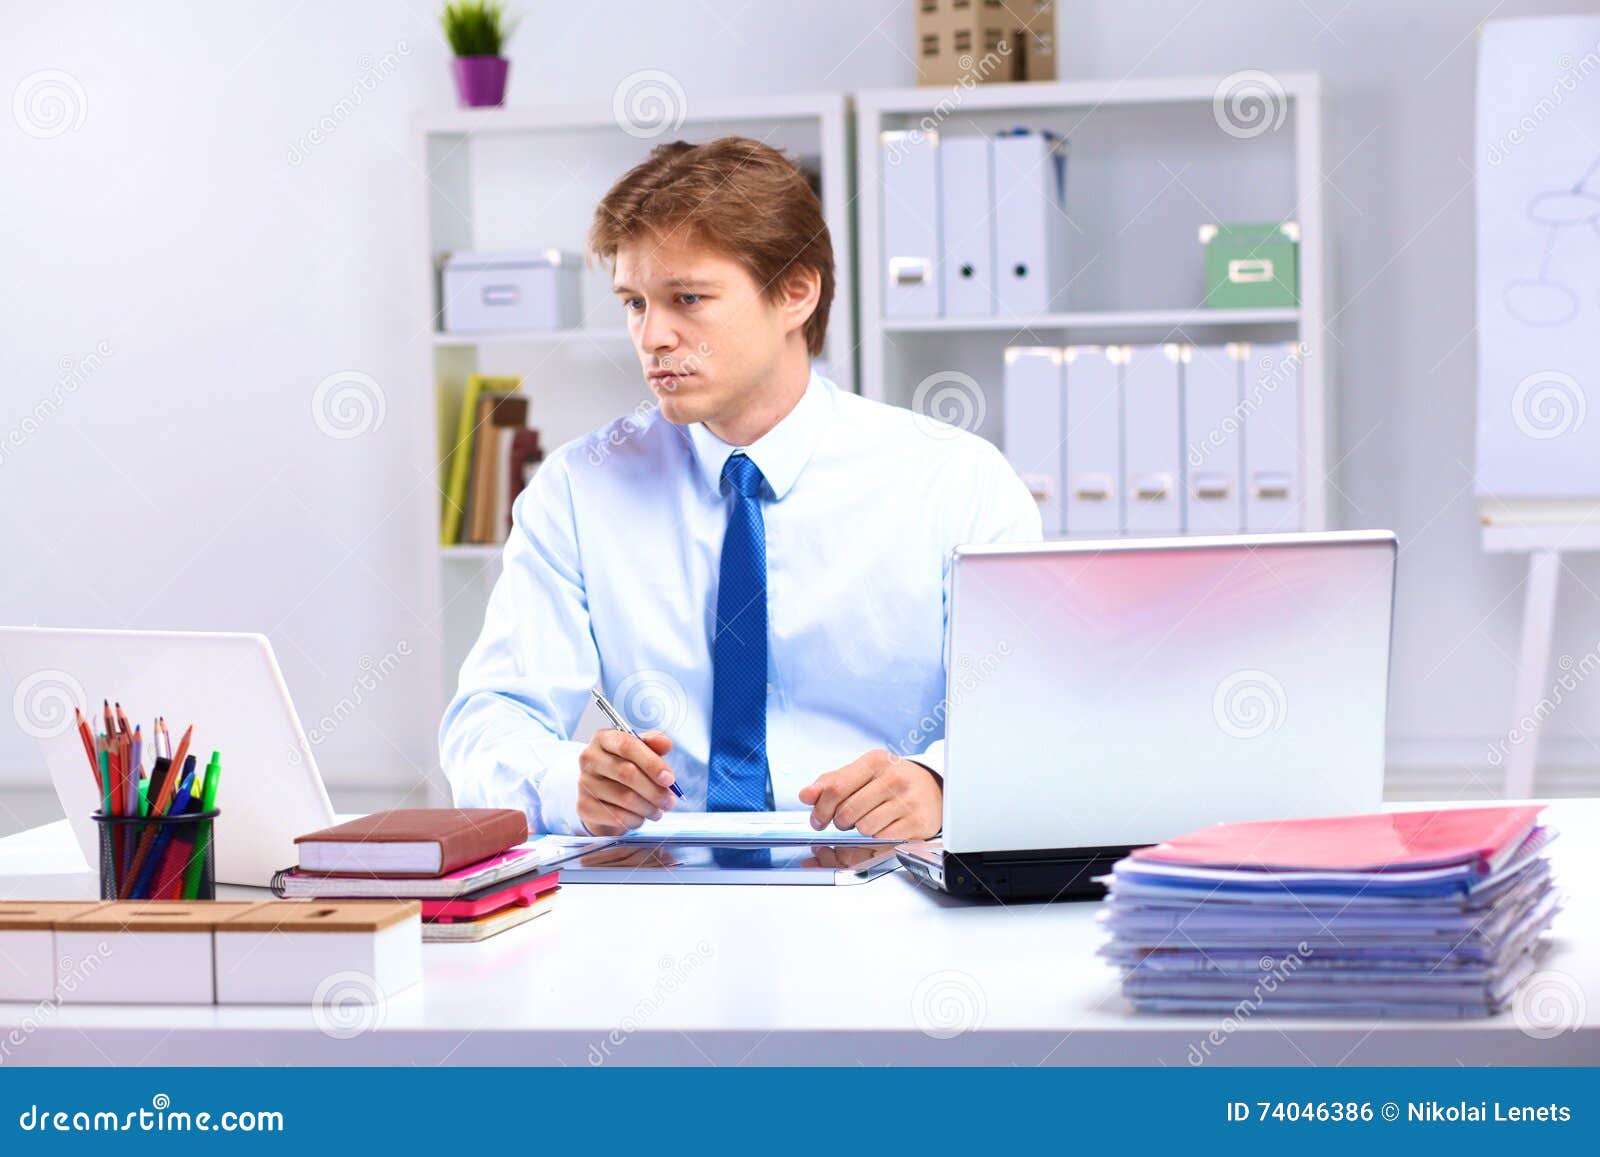 Сотрудник совсем. Мужчина сидит в офисе. Женщина сидит в офисе. Кадровик блоггер фото. Кадролик блоггер фото.